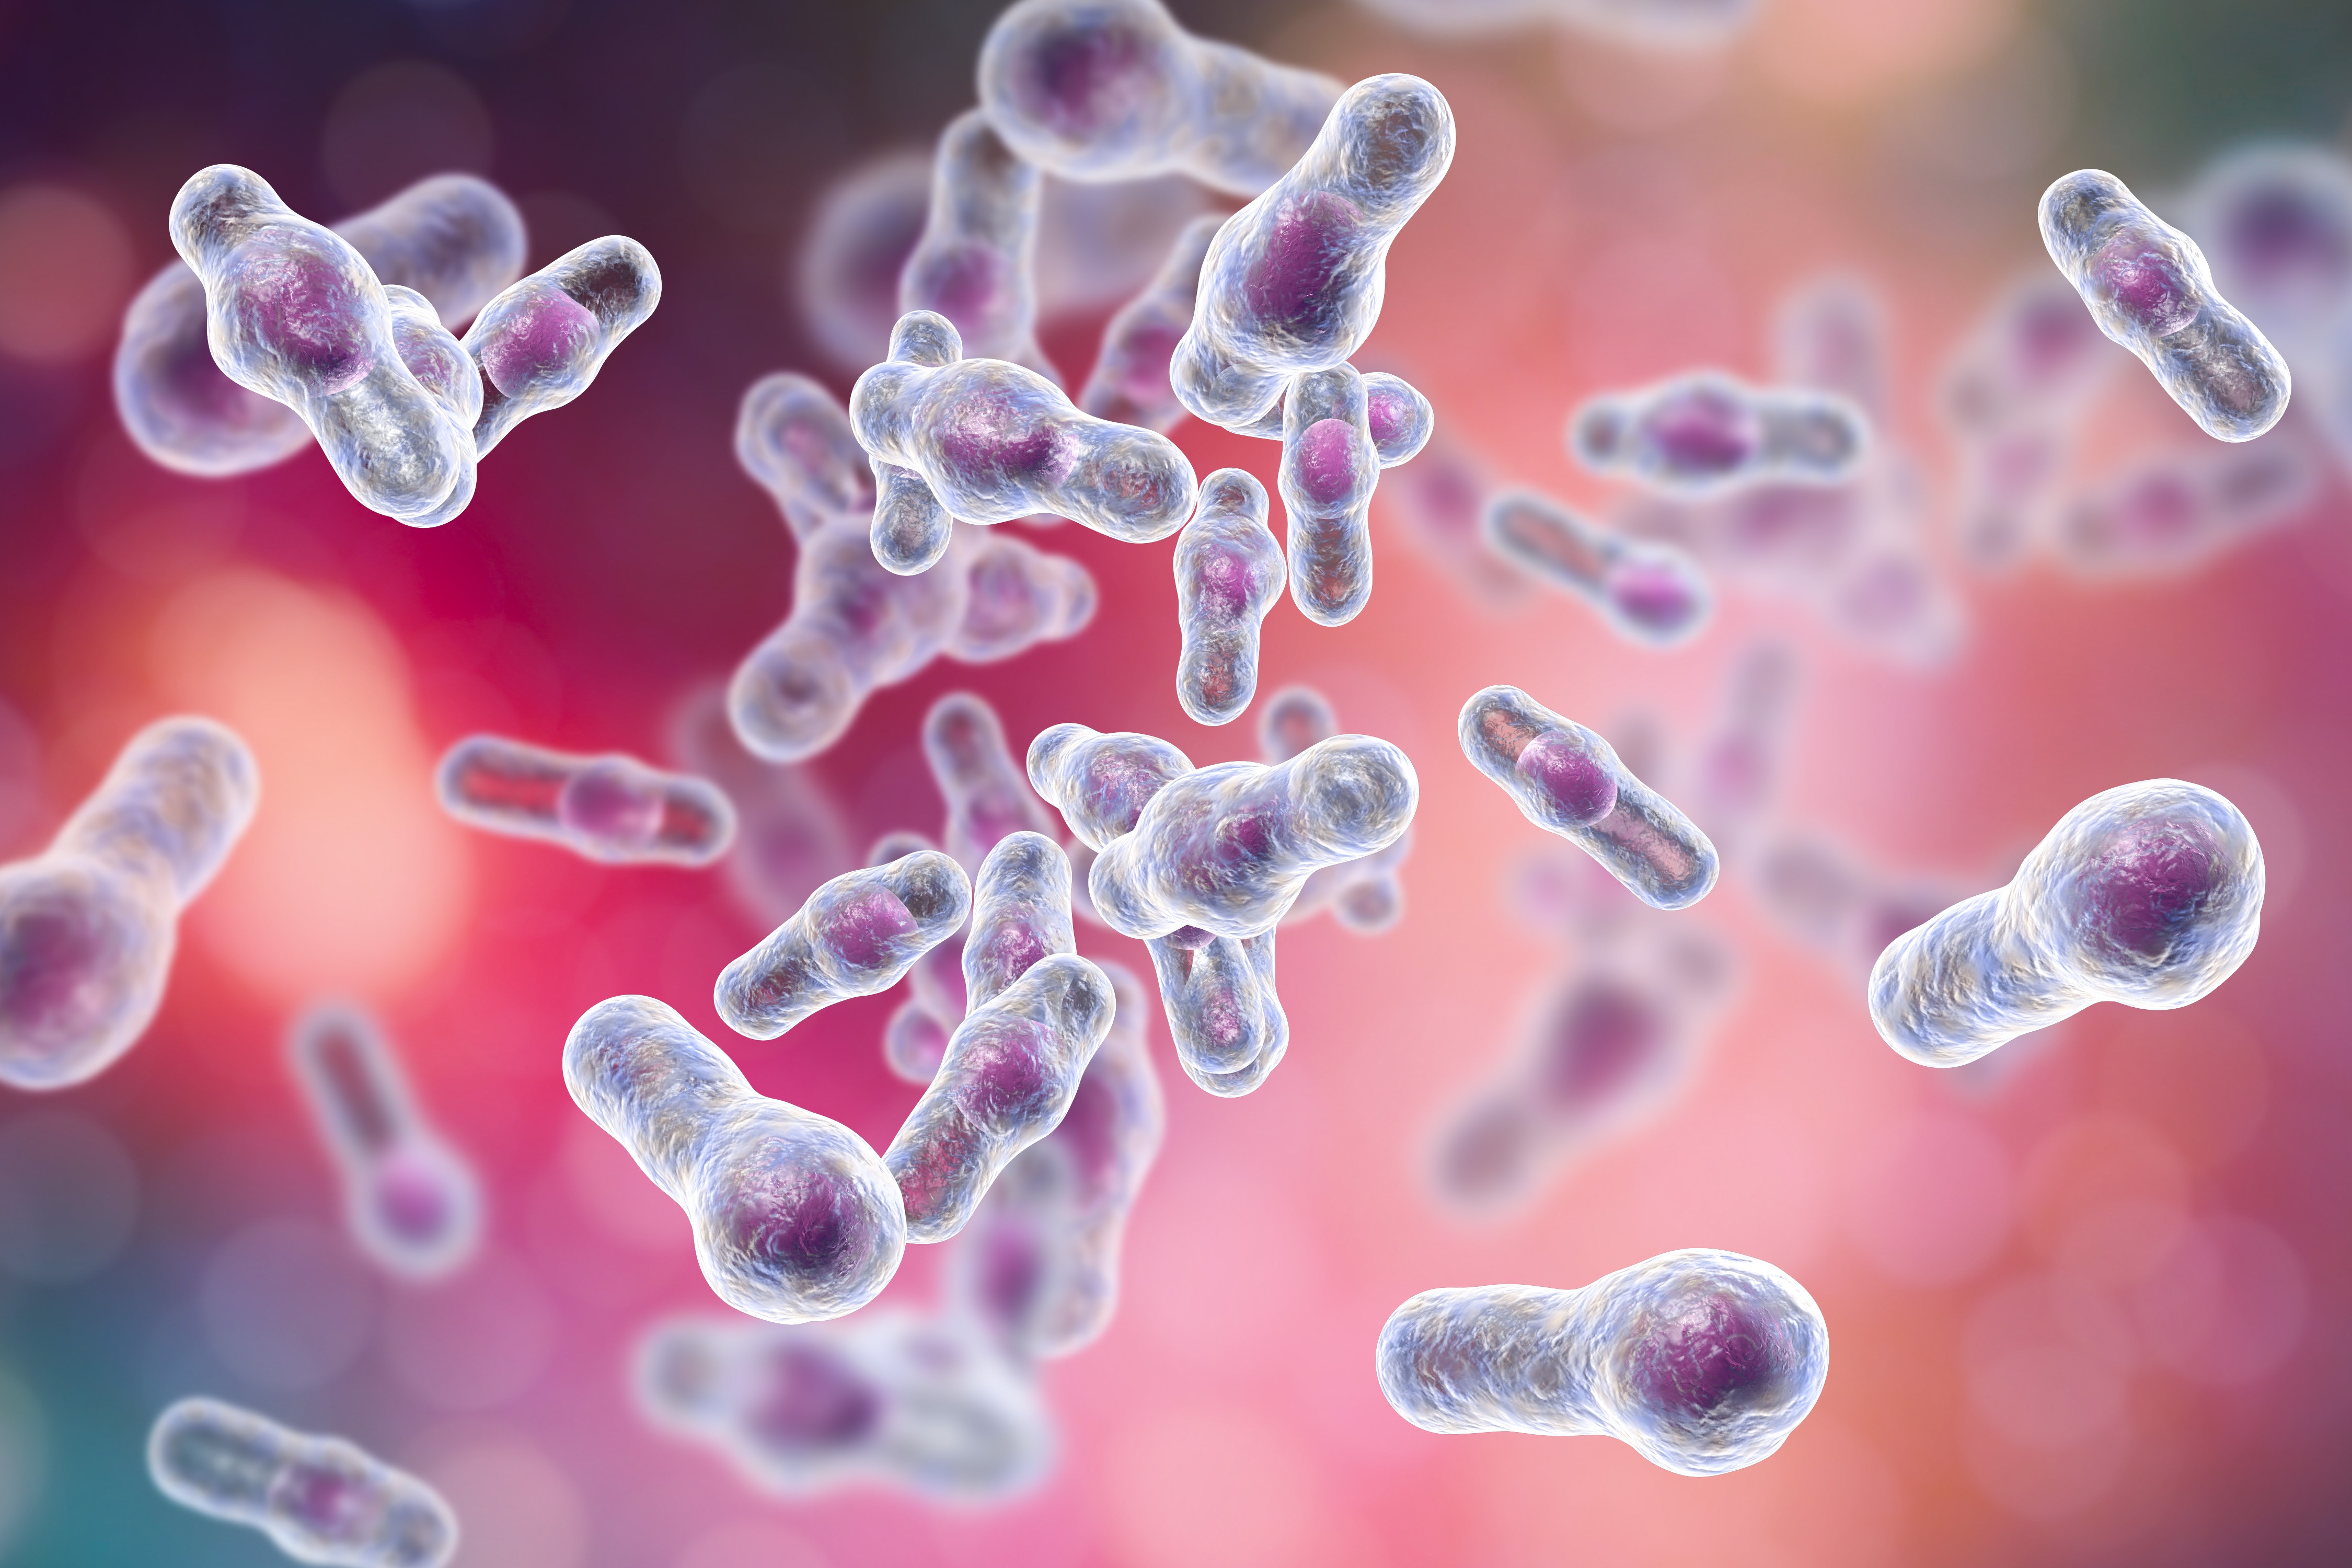 Comment les bactéries qui vivent dans nos intestins ou microbiote intestinal, survivent-elles aux environnements pauvres en oxygène ? (Visuel Adobe Stock 186445101)